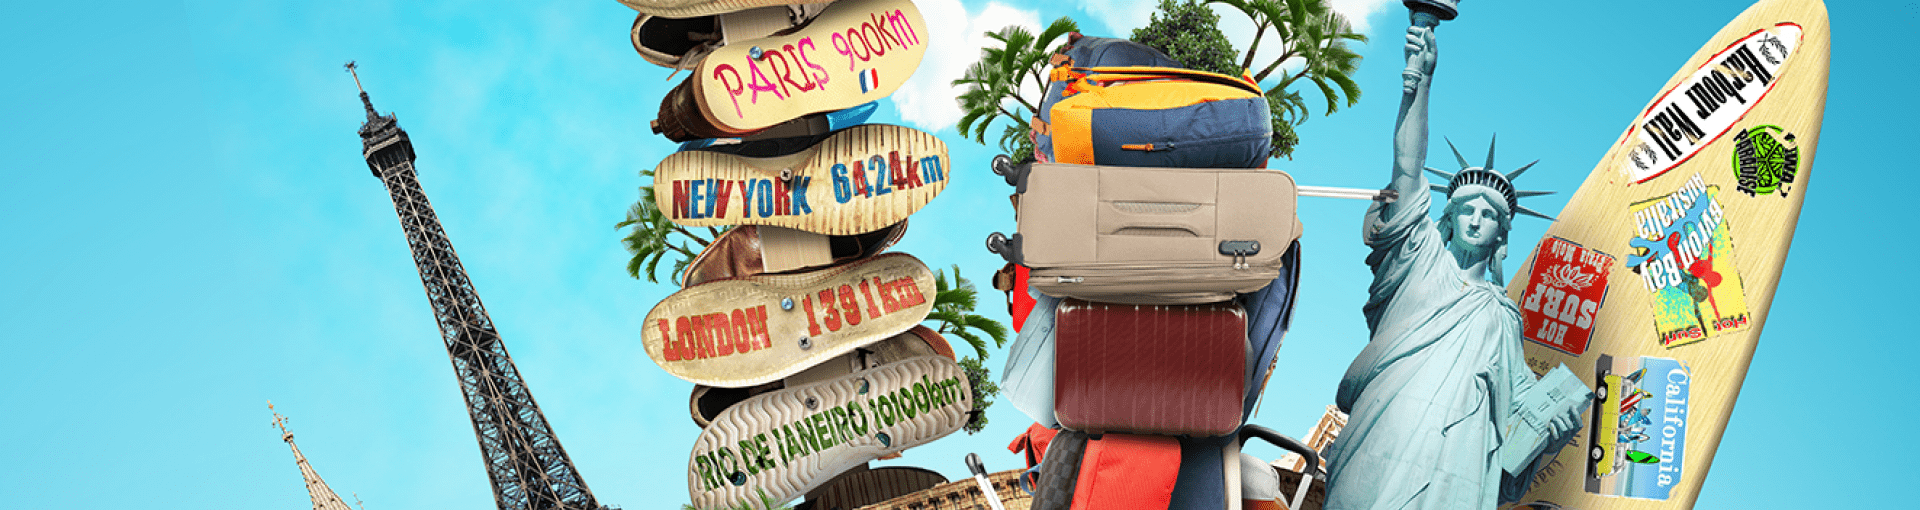 Campagne vakantiegevoel; verzameling van spullen en bagage om op reis te gaan op een blauwe achtergrond